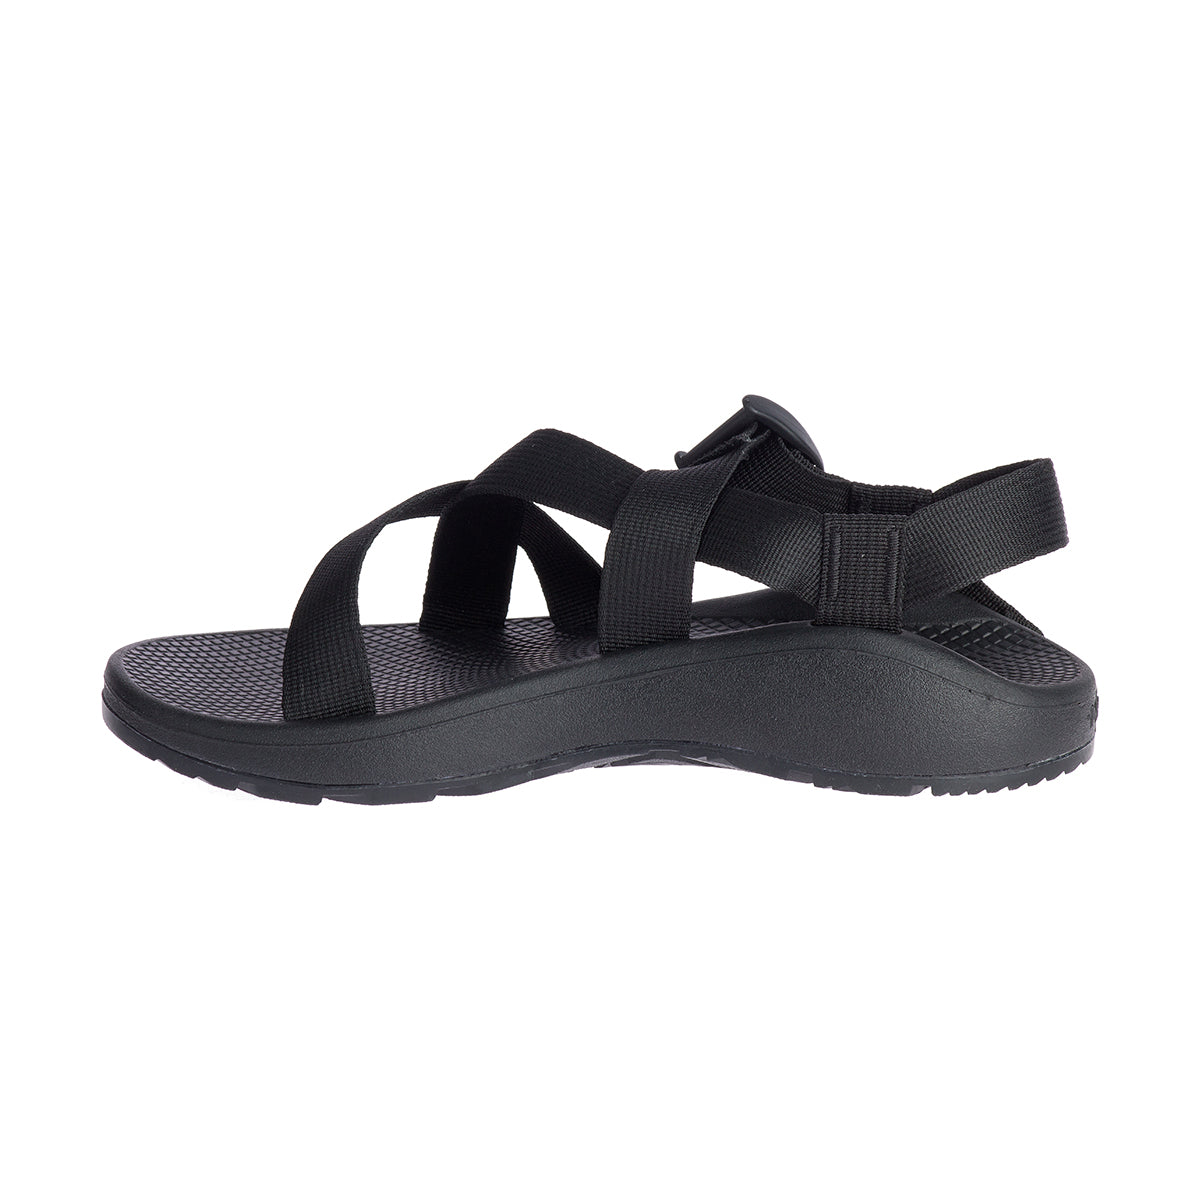 Men's Z Cloud Sandal - Solid Black- Regular (D)